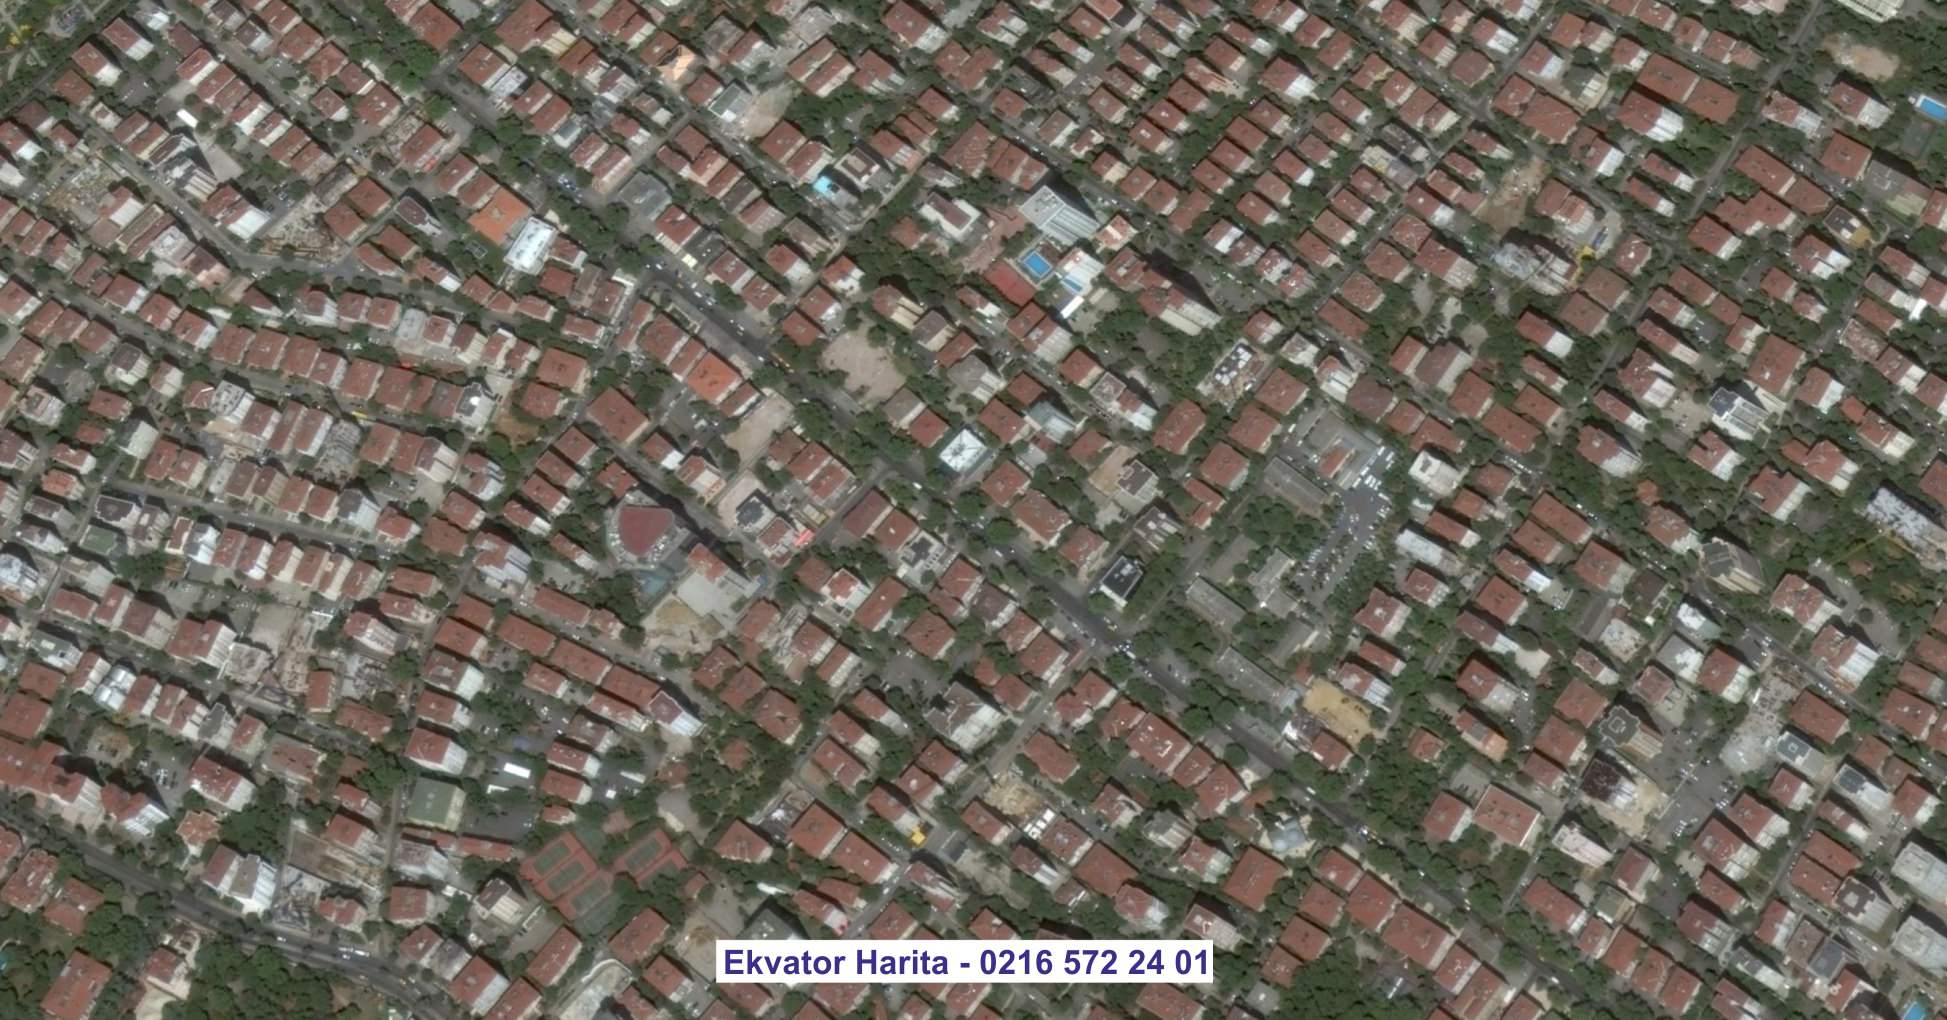 Osmaniye Uydu Görüntüsü Örnek Fotoğrafı